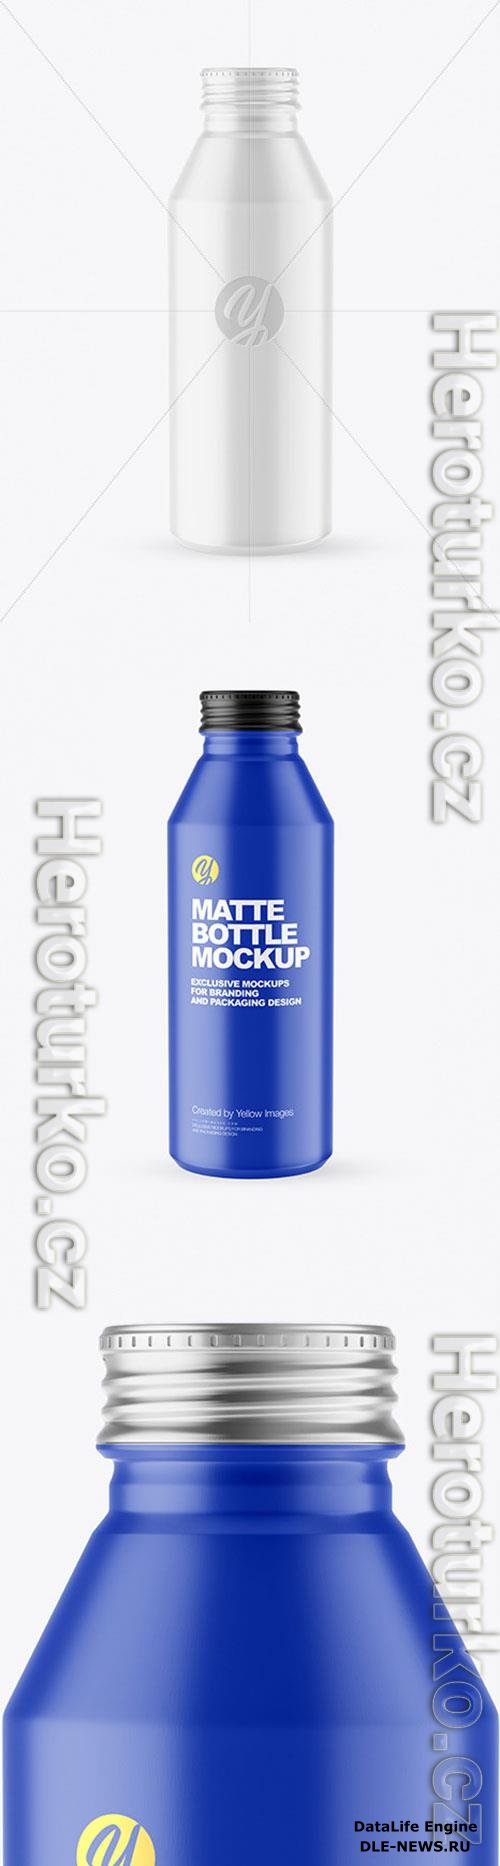 Matte Drink Bottle Mockup 86549